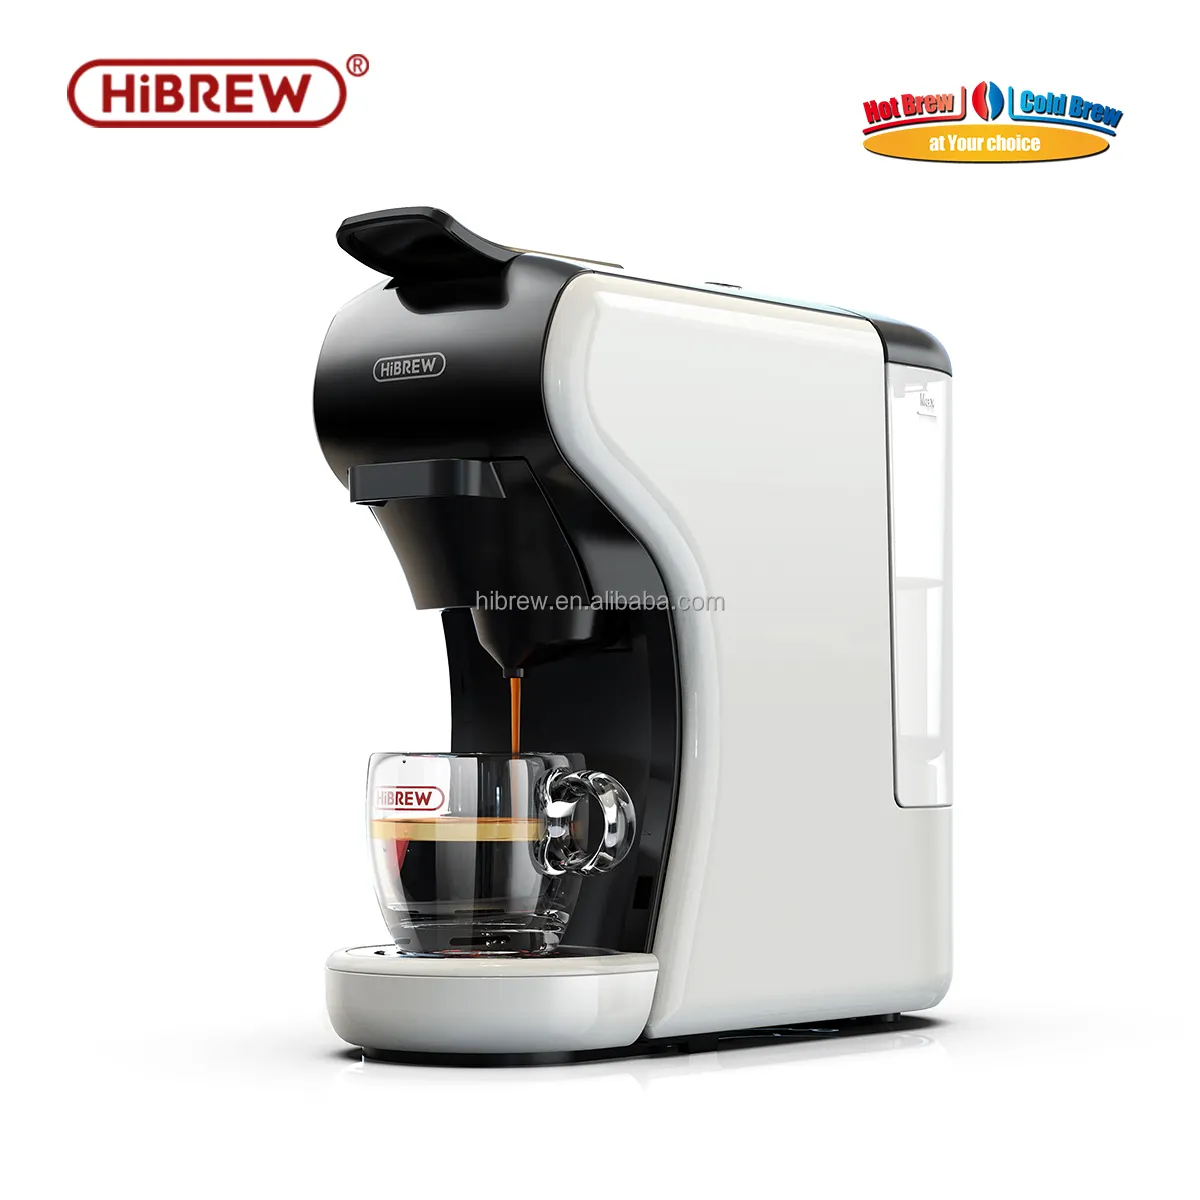 ماكينة إعداد قهوة الإسبريسو والقهوة من HiBREW H1A كبسولات متعددة رغوة الحليب باردة وساخنة استخراج 4 في 1 19 بار